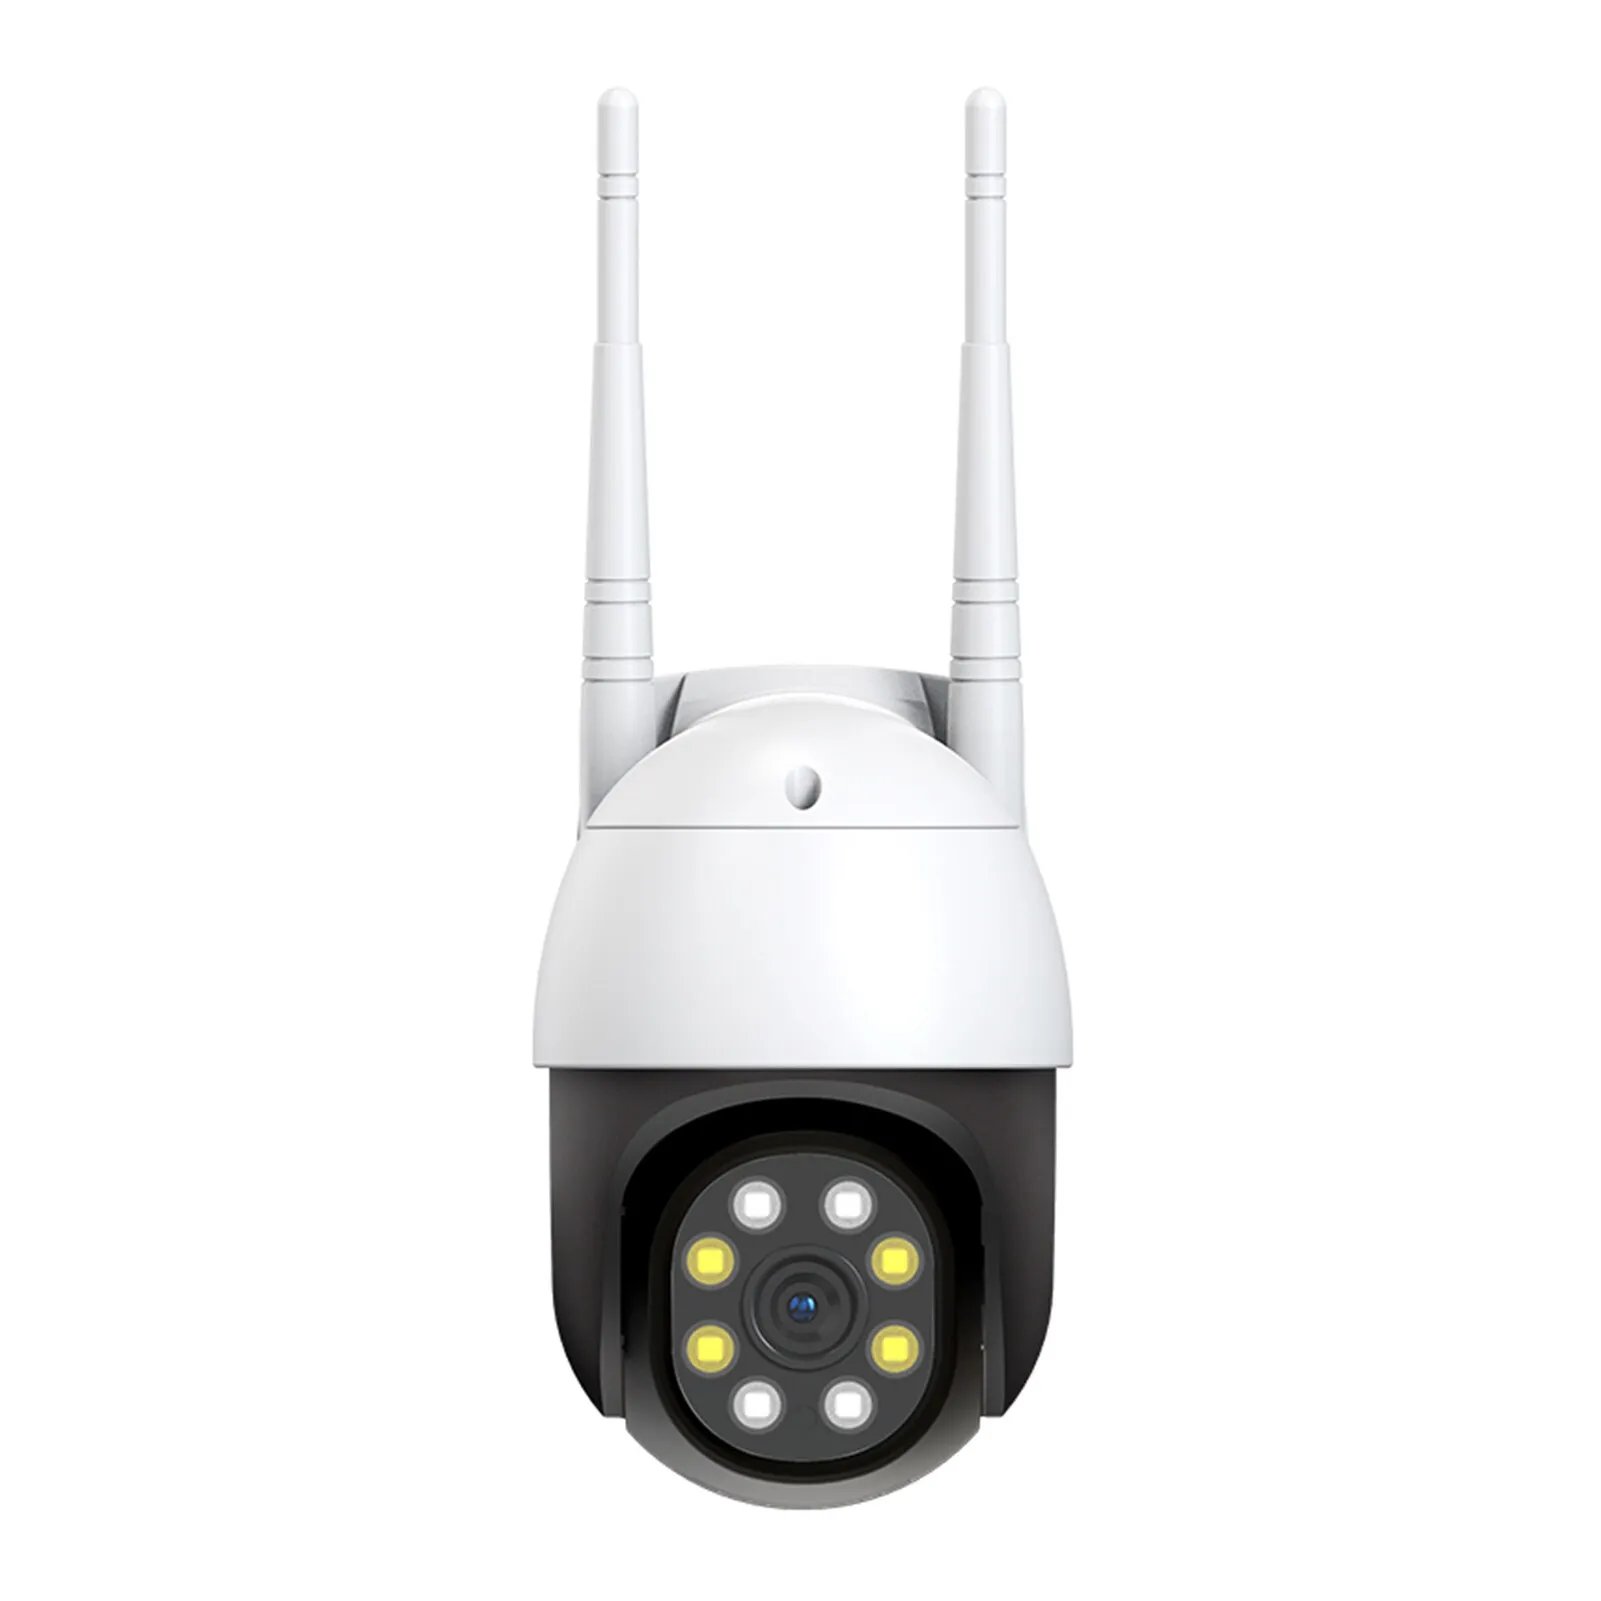 Telecamera di sicurezza esterna, telecamere esterne WiFi wireless Pan Tilt 1080P per sistema di sicurezza domestica con vista a 360 °, visione nottur